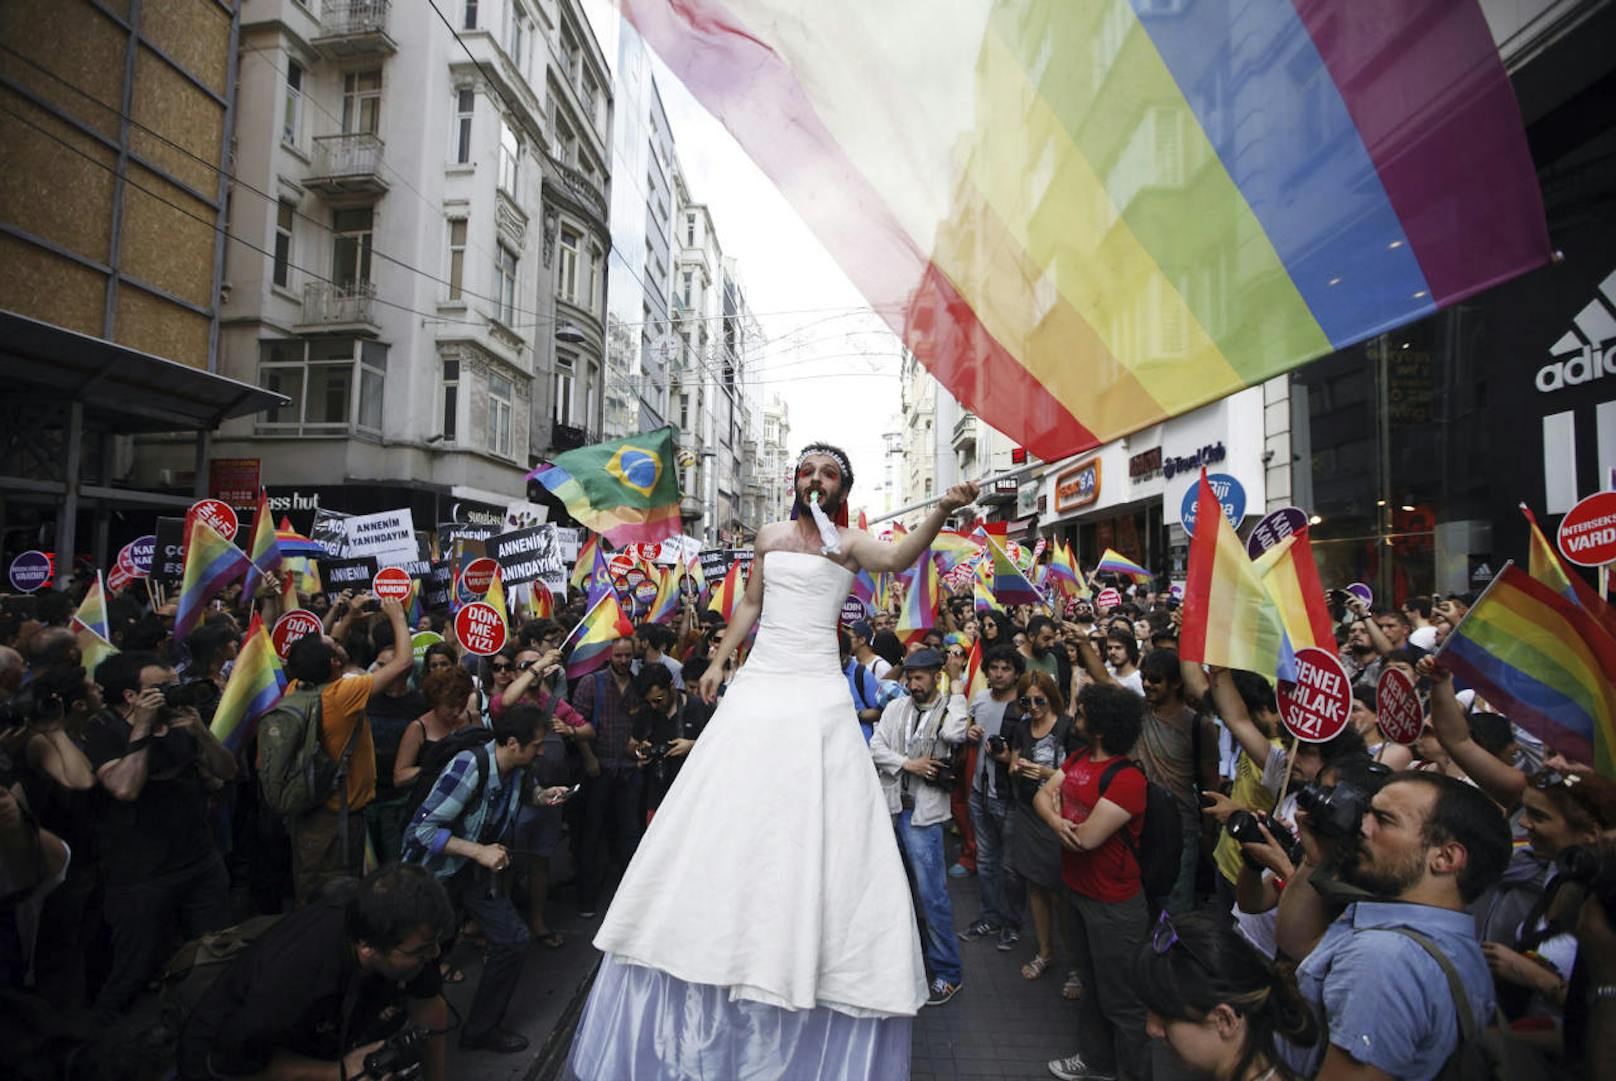 Ab 2014 wurde der Umzug für die Rechte von Homosexuellen dann vom Gouverneur verboten